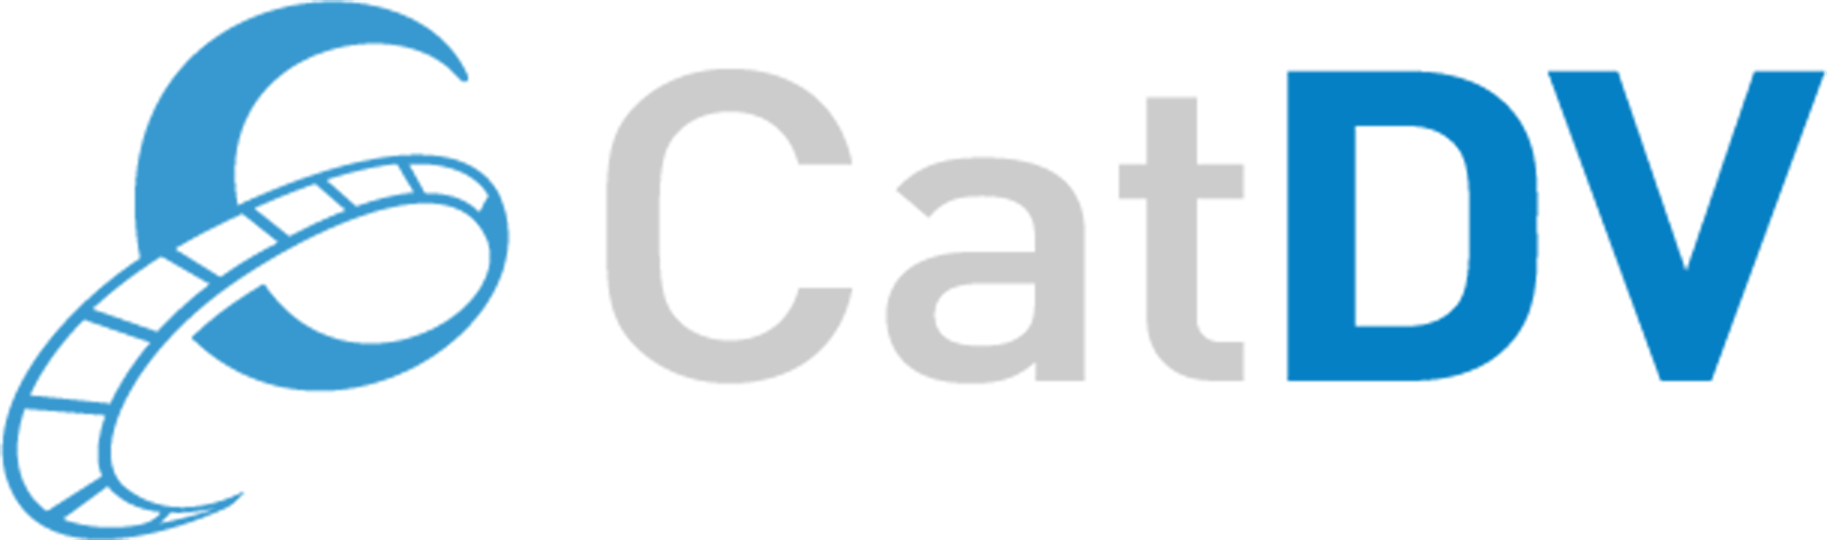 catdv logo3x